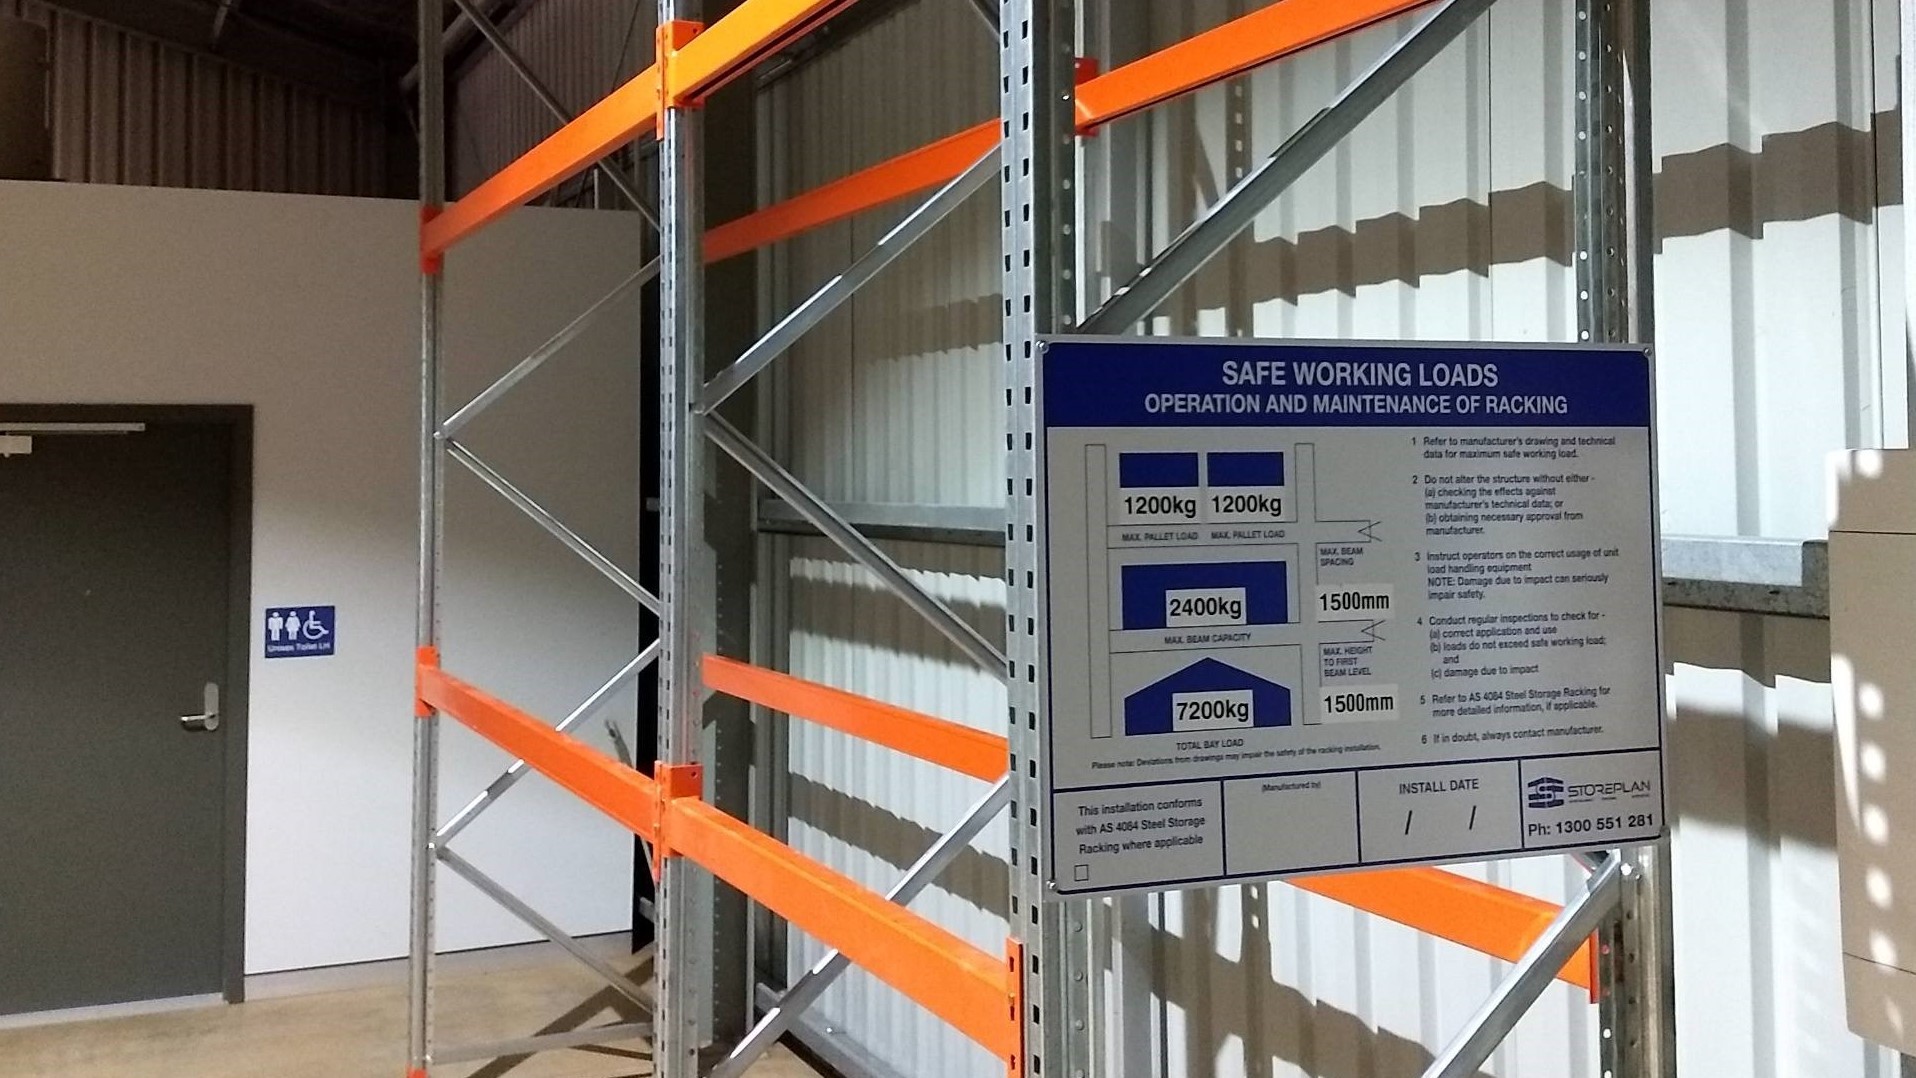 Safe working load sign on pallet racking